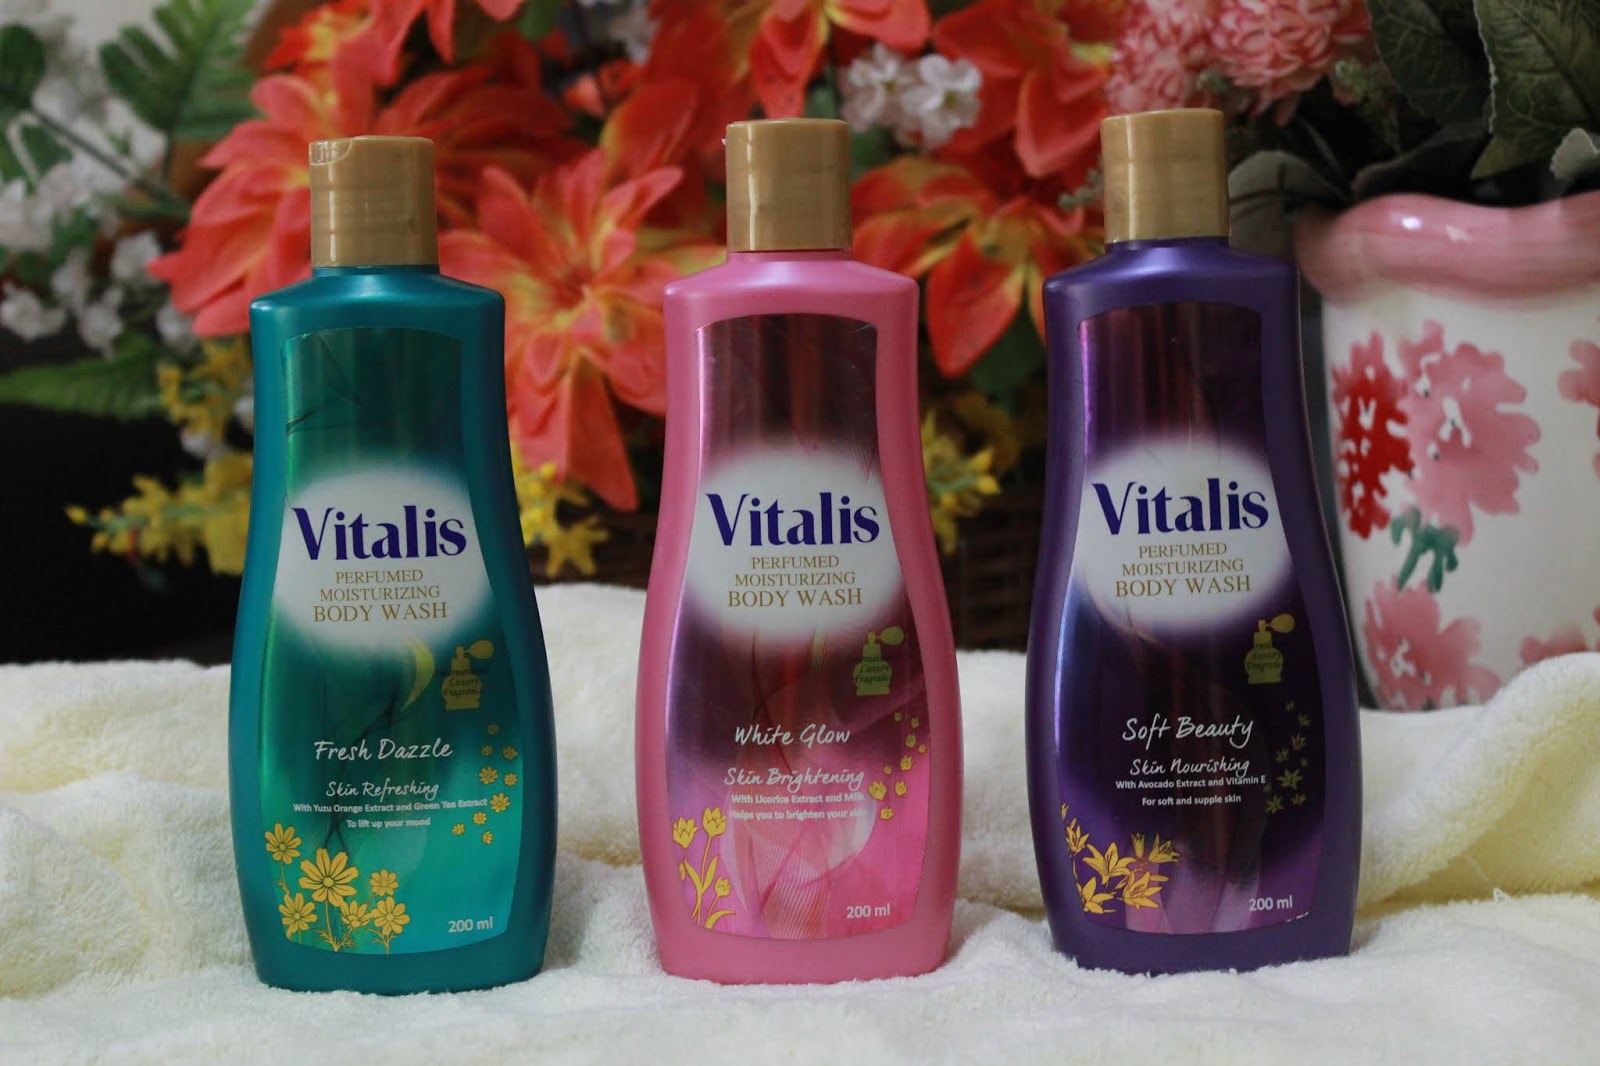 Vitalis Body Wash